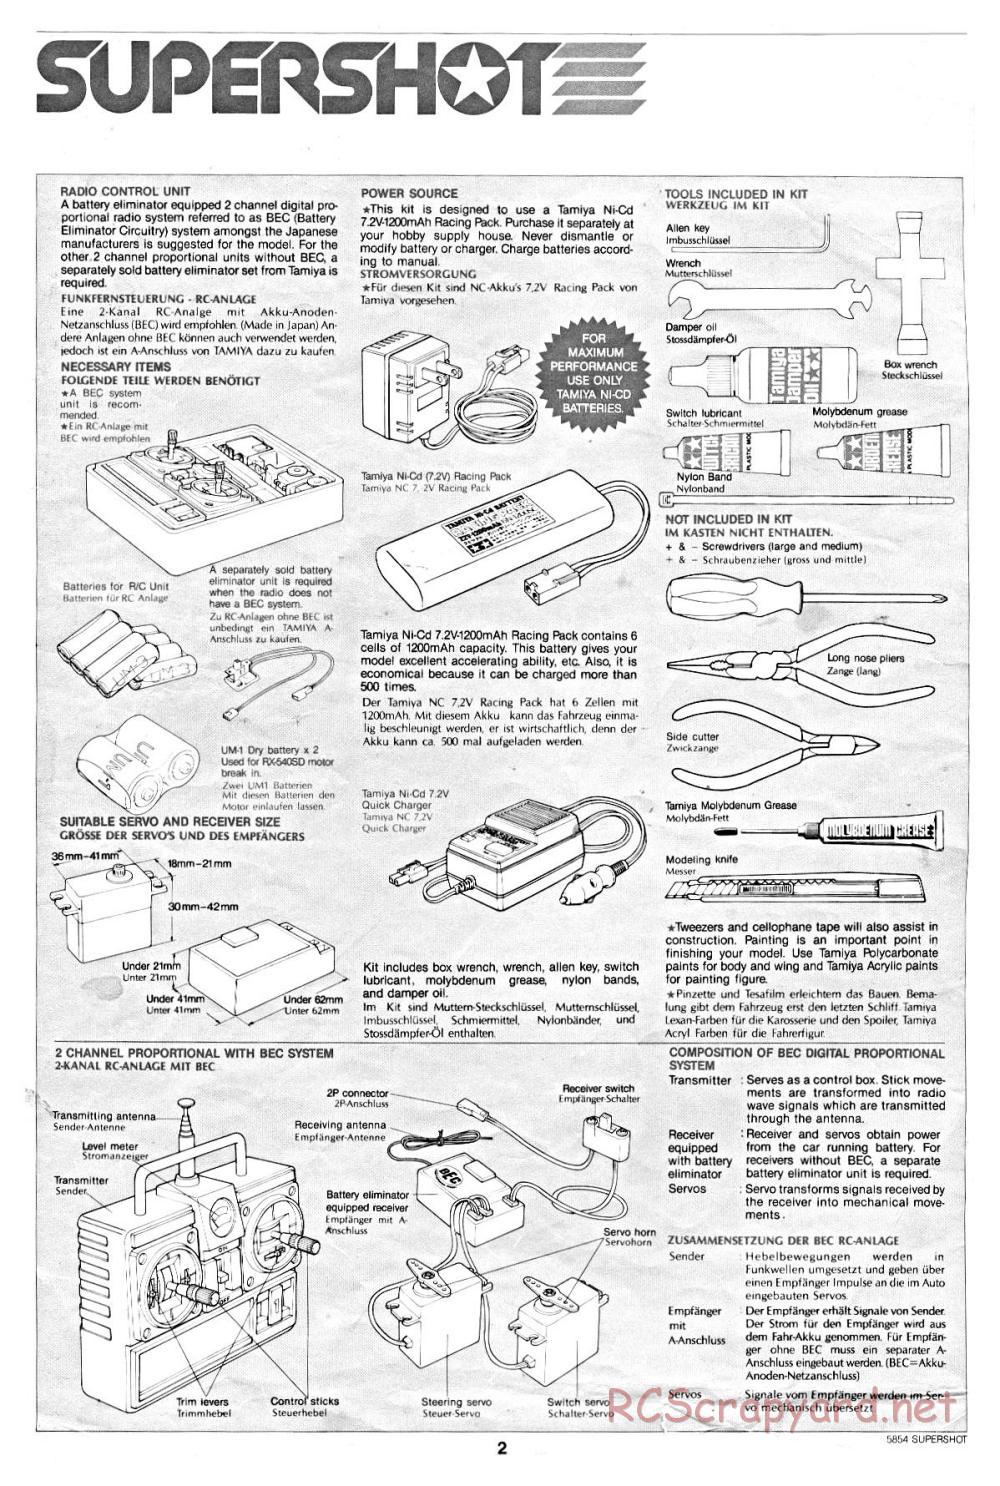 Tamiya - Supershot - 58054 - Manual - Page 2